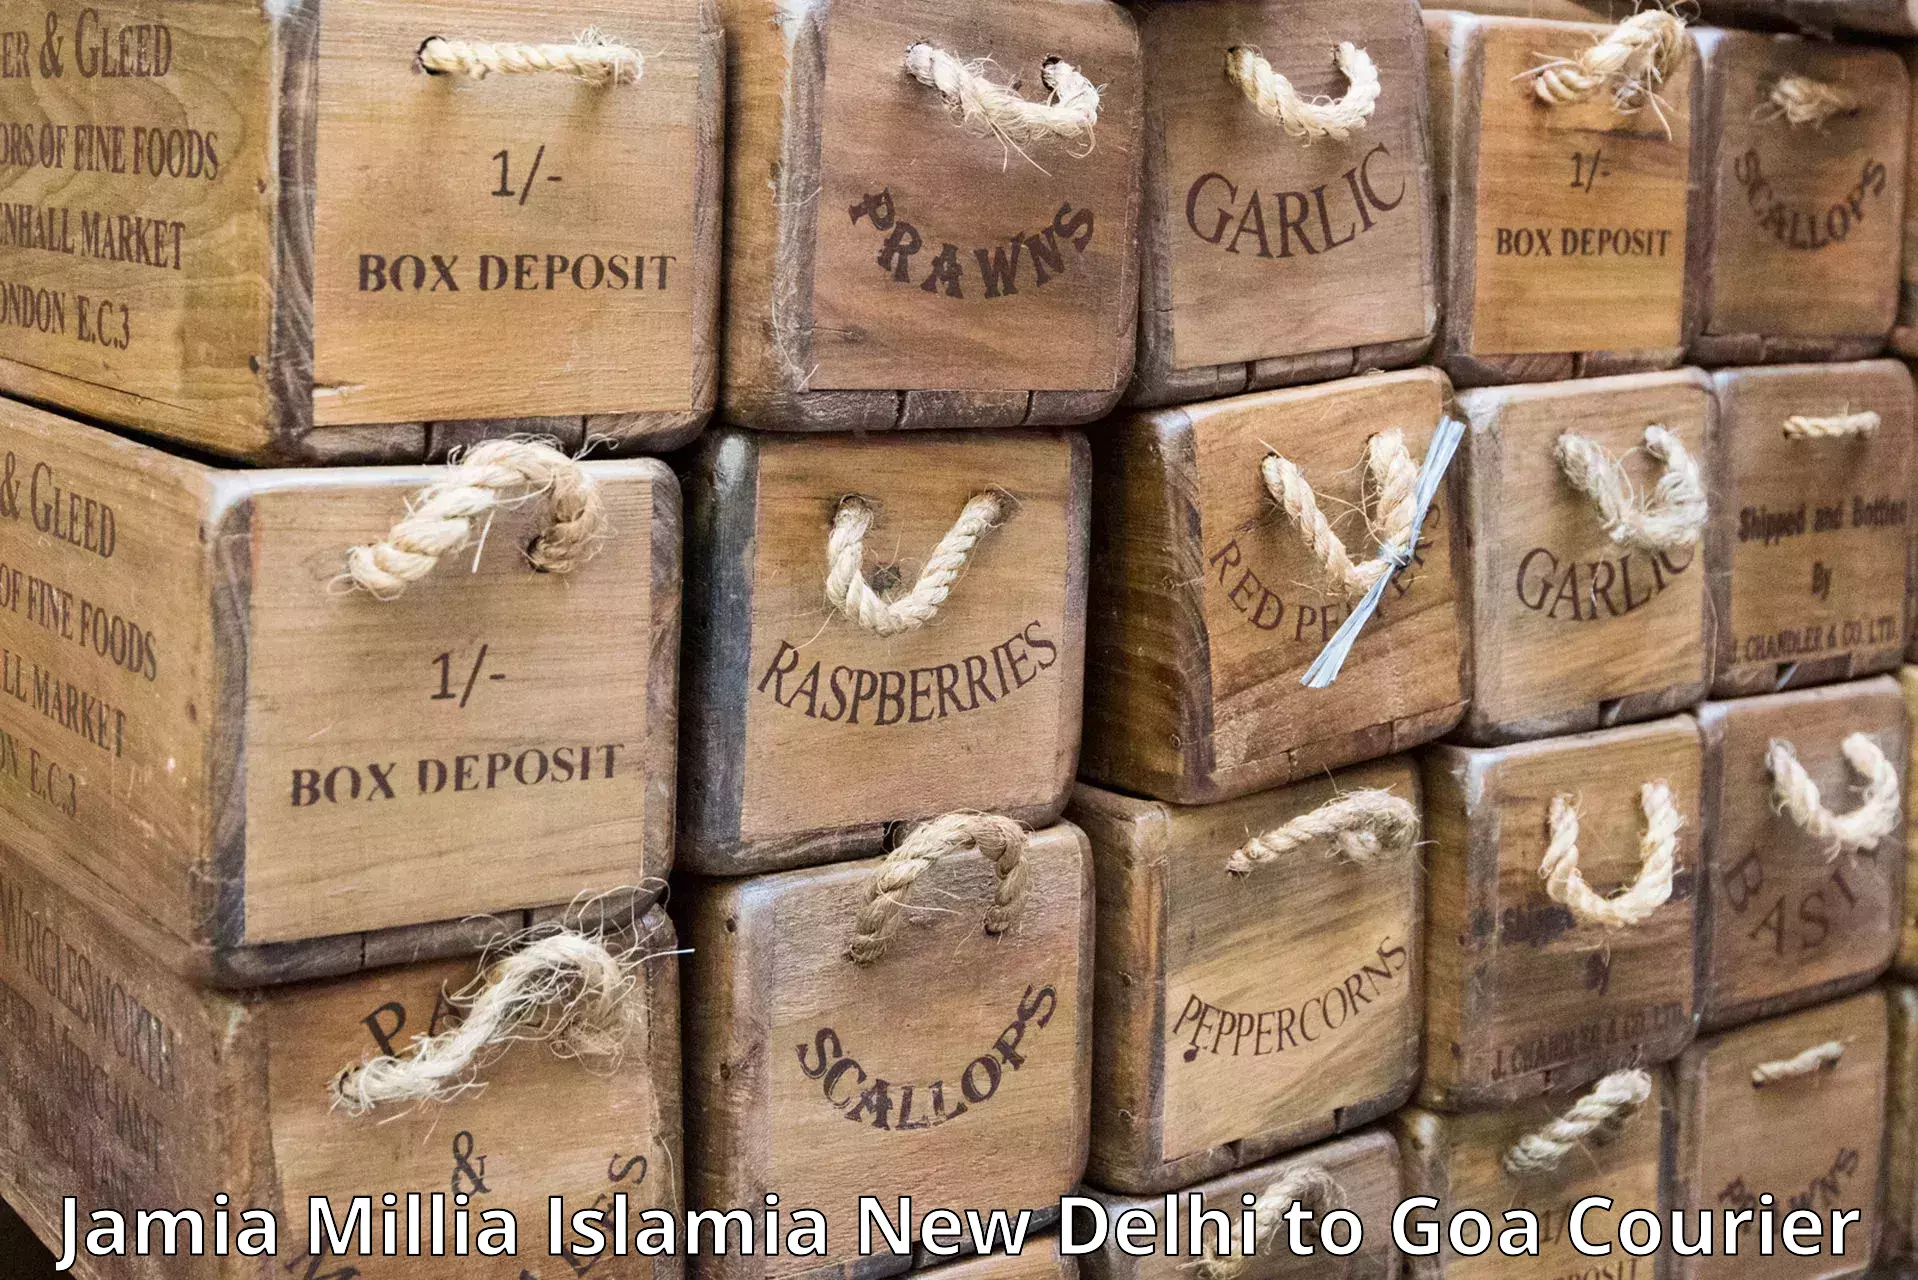 Express delivery network in Jamia Millia Islamia New Delhi to Bicholim